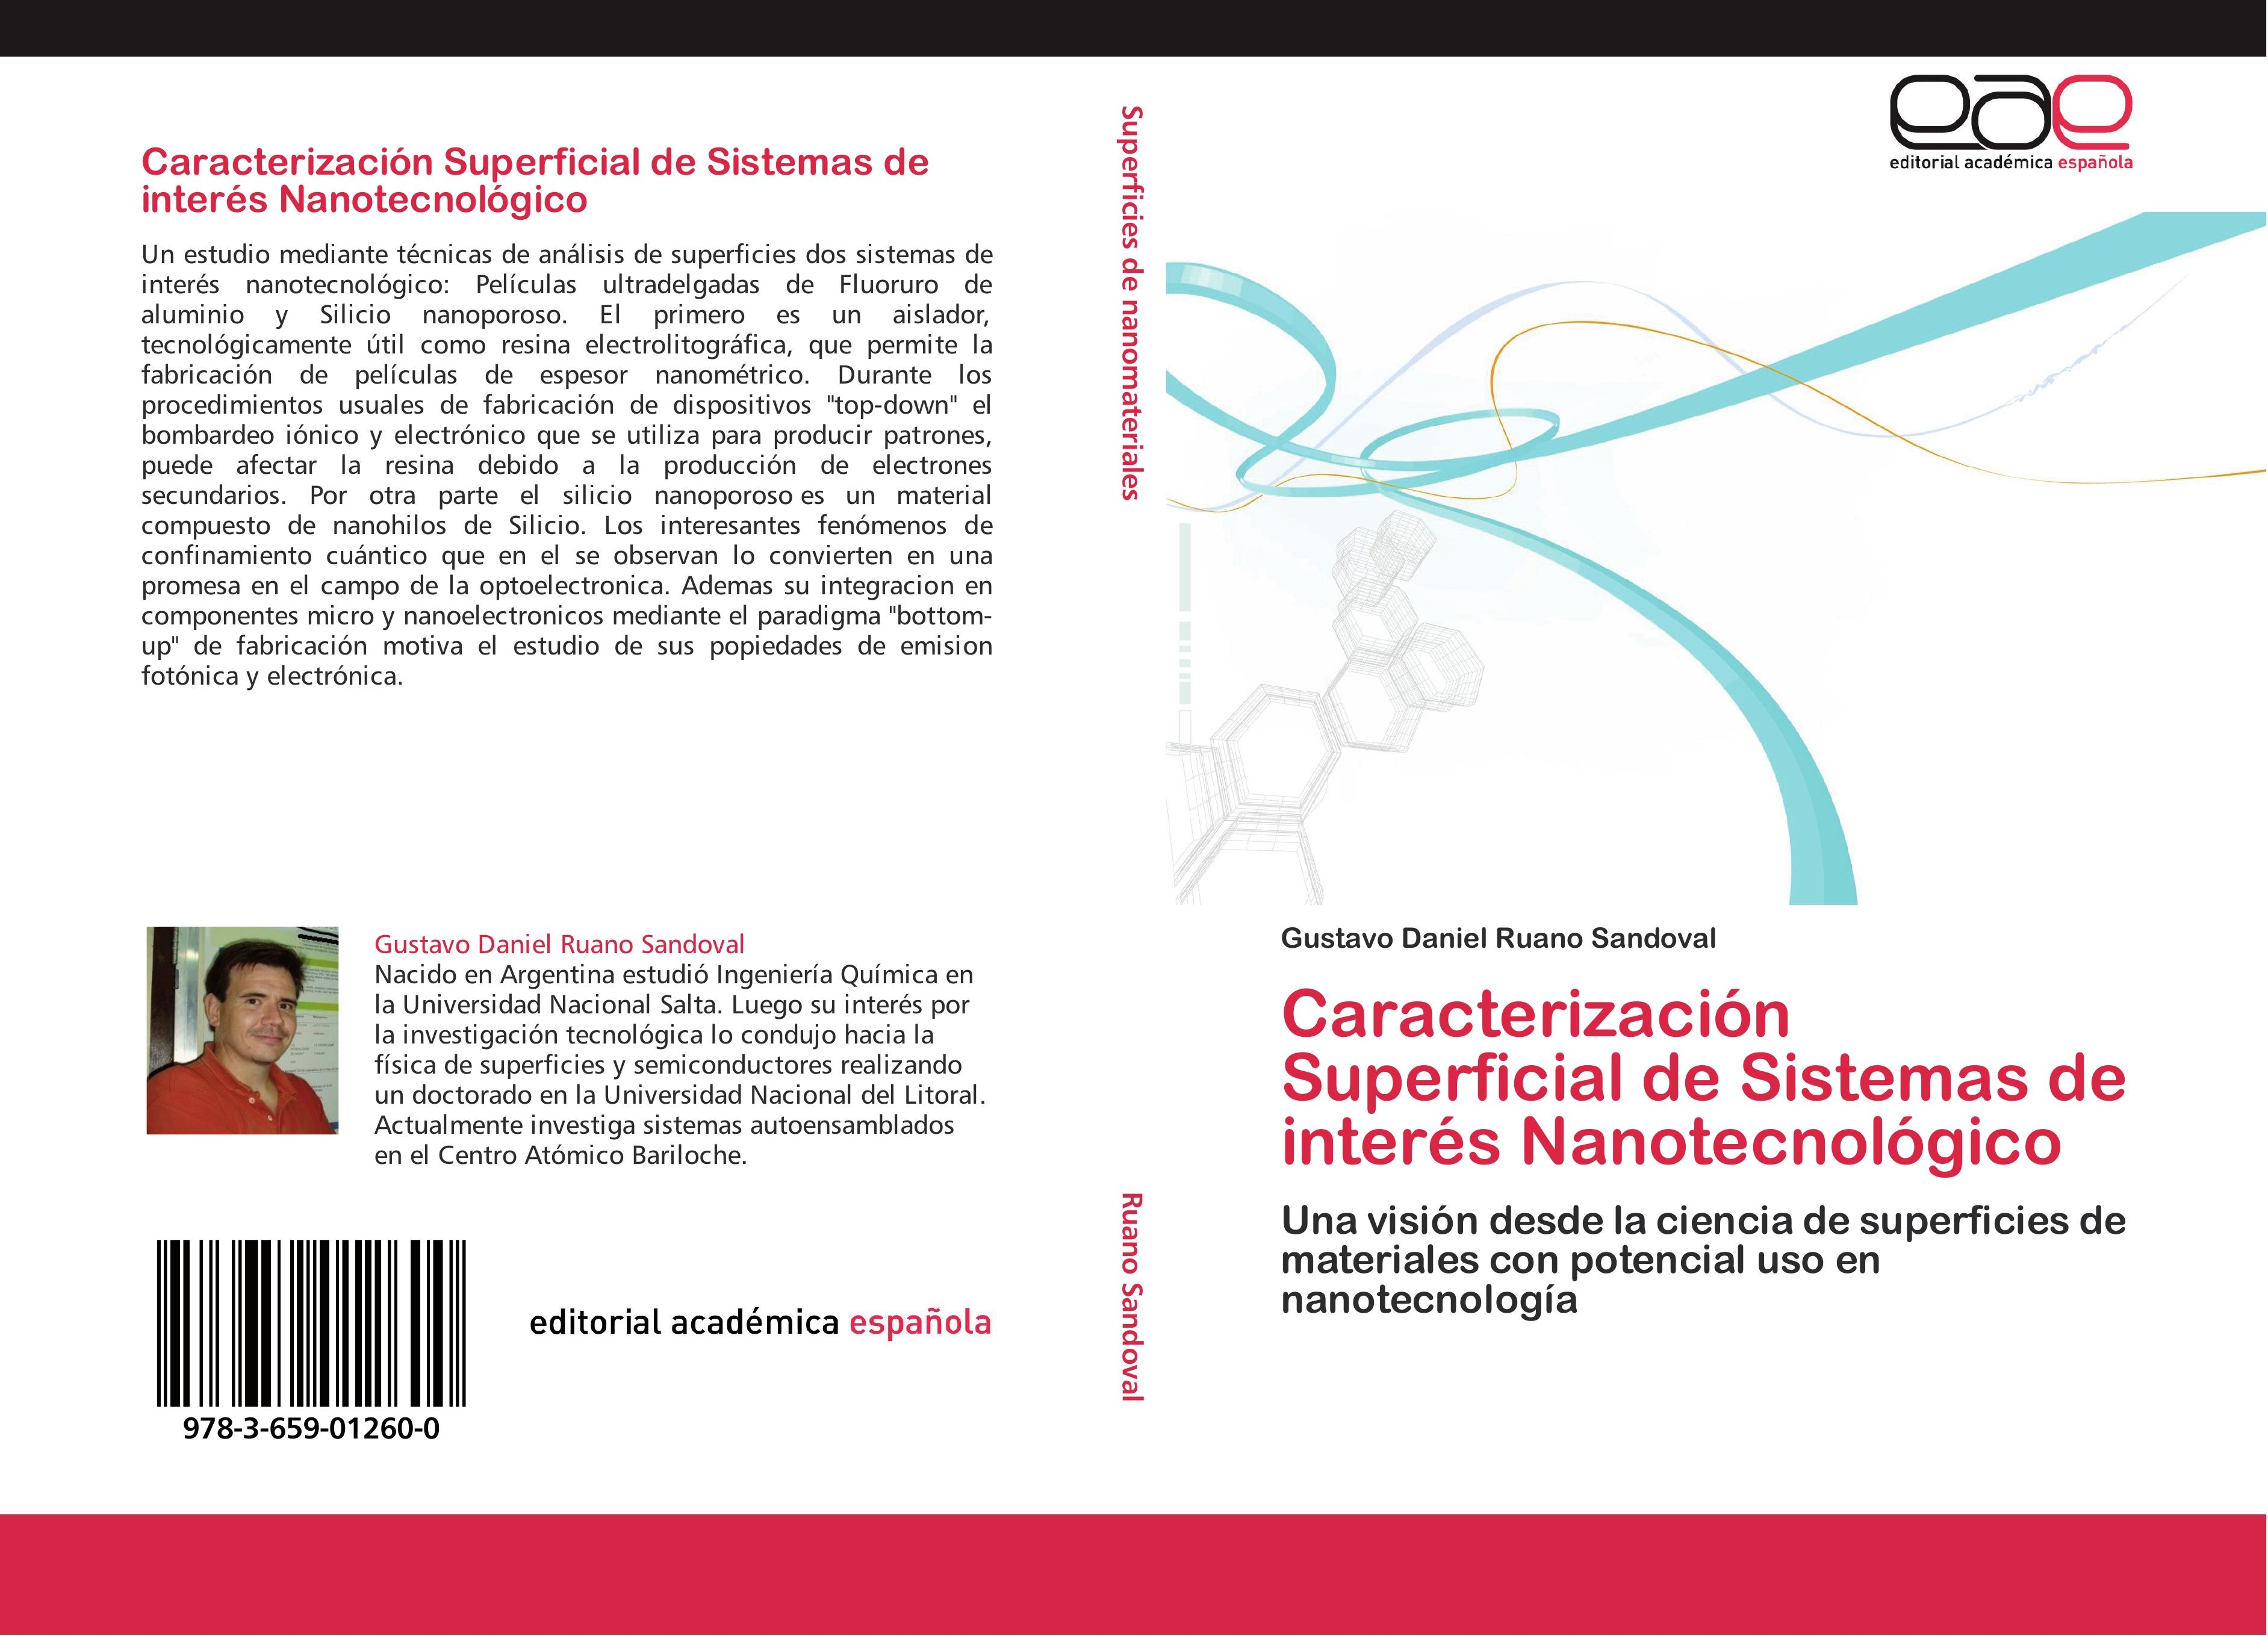 Caracterización Superficial de Sistemas de interés Nanotecnológico - Gustavo Daniel Ruano Sandoval